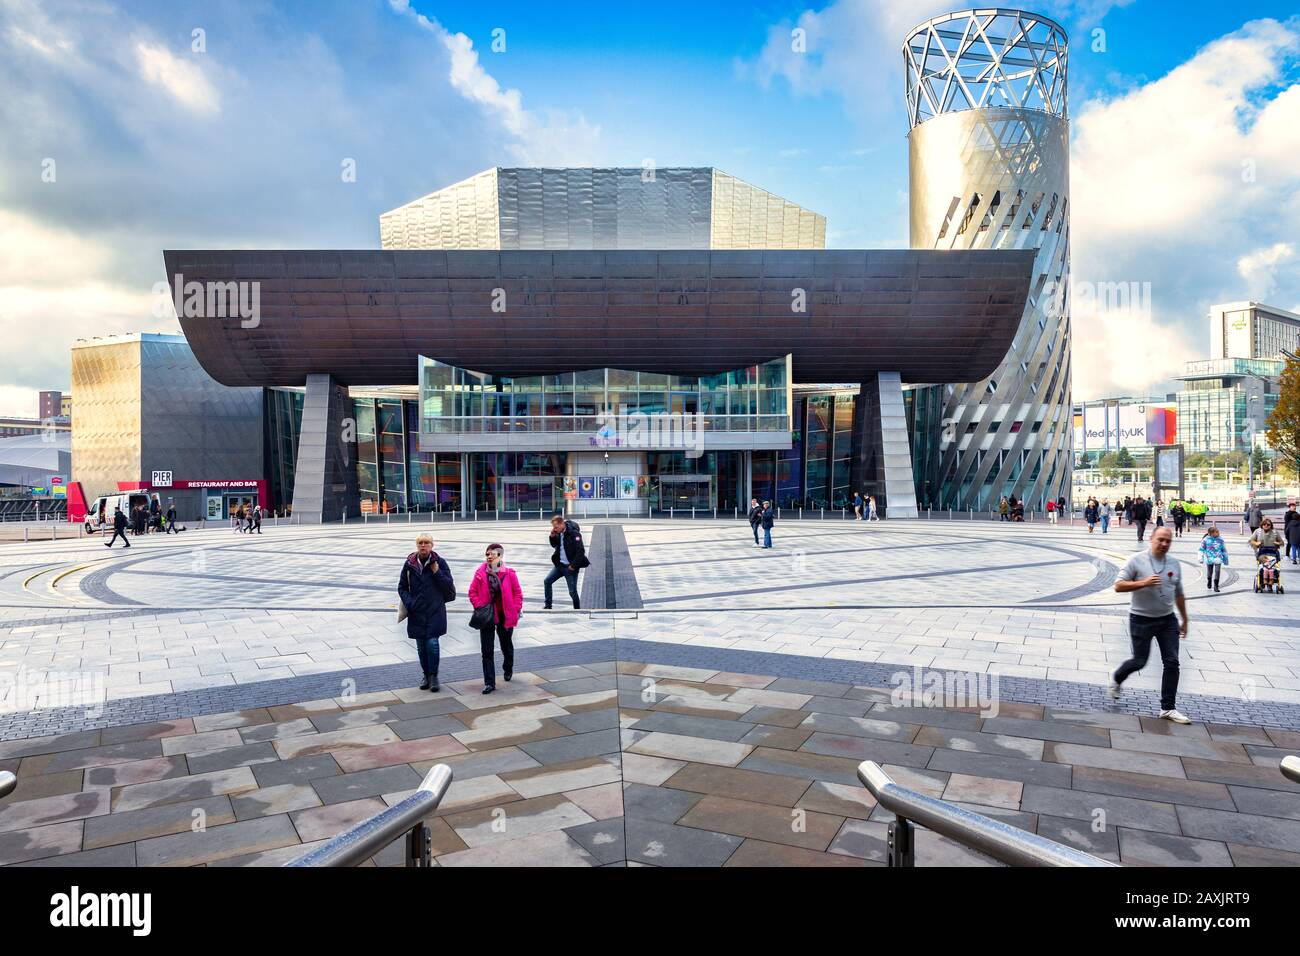 2 novembre 2018 : Salford Quays, Manchester, Royaume-Uni - The Lowry, la galerie et le complexe de musées célébrant la vie de L.S. Lowry. Il a été conçu par Jam Banque D'Images